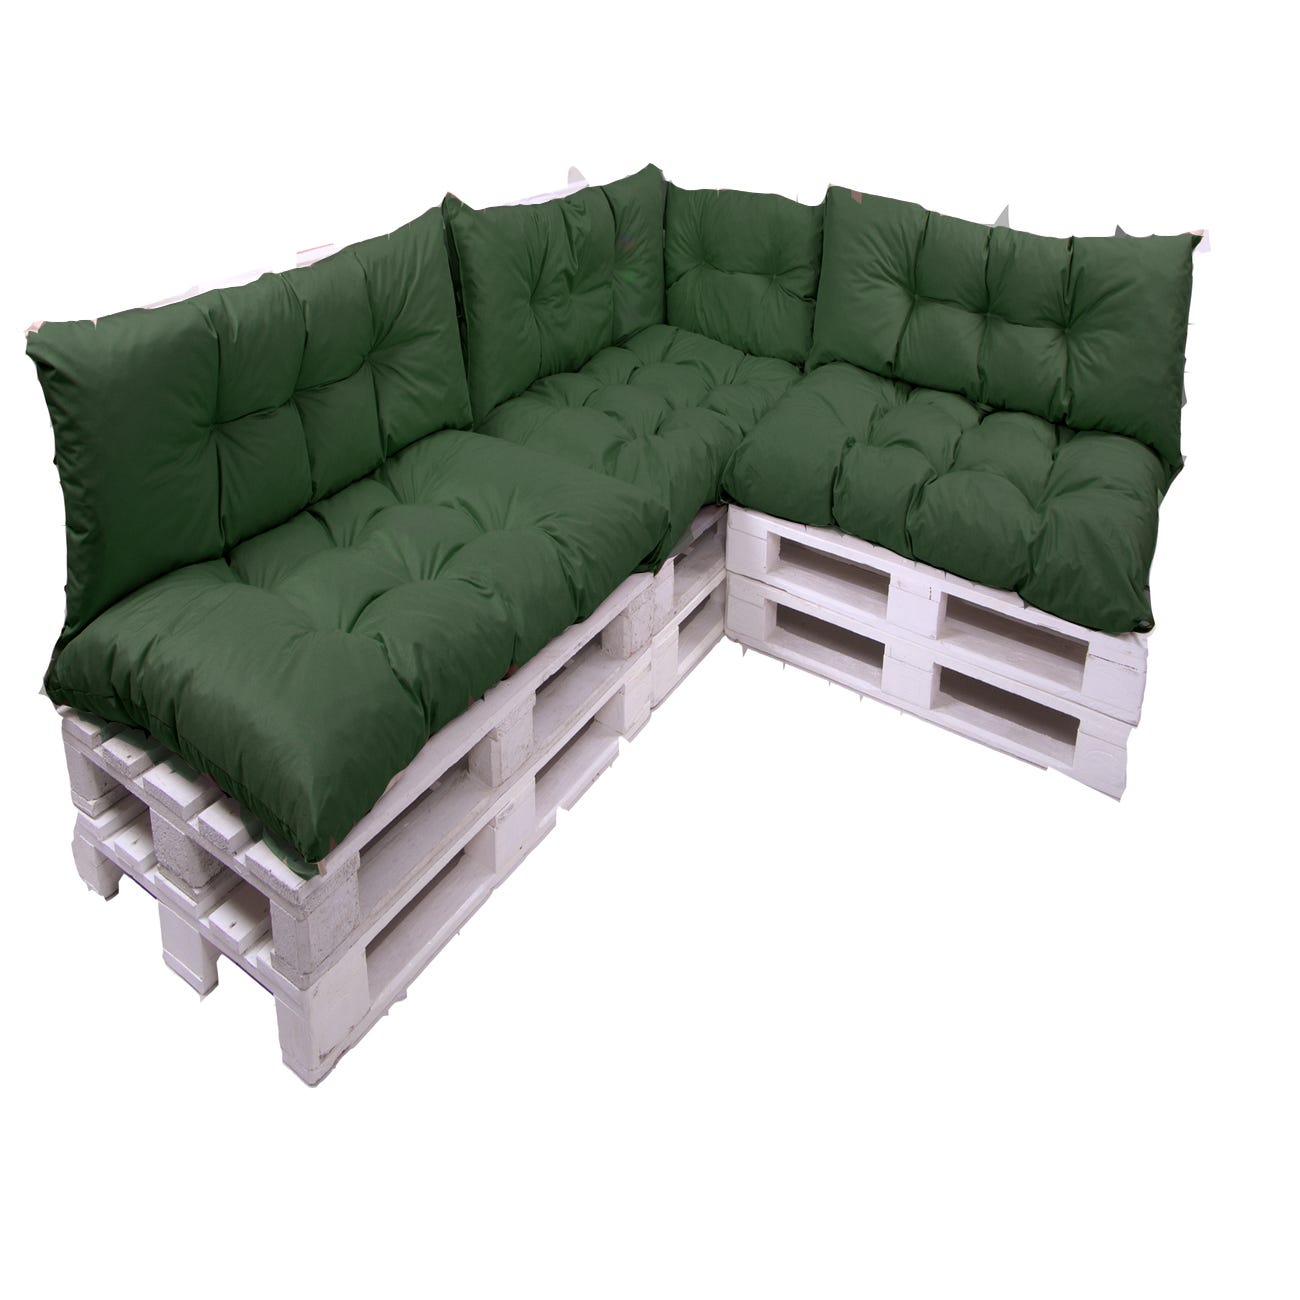  Cojines de sofá de paleta, 7 piezas, cojín de asiento grueso  acolchado, cojín de muebles de paleta, exterior, patio, cojín de muebles de  patio, cojín de sofá, tela (100% poliéster), antracita 